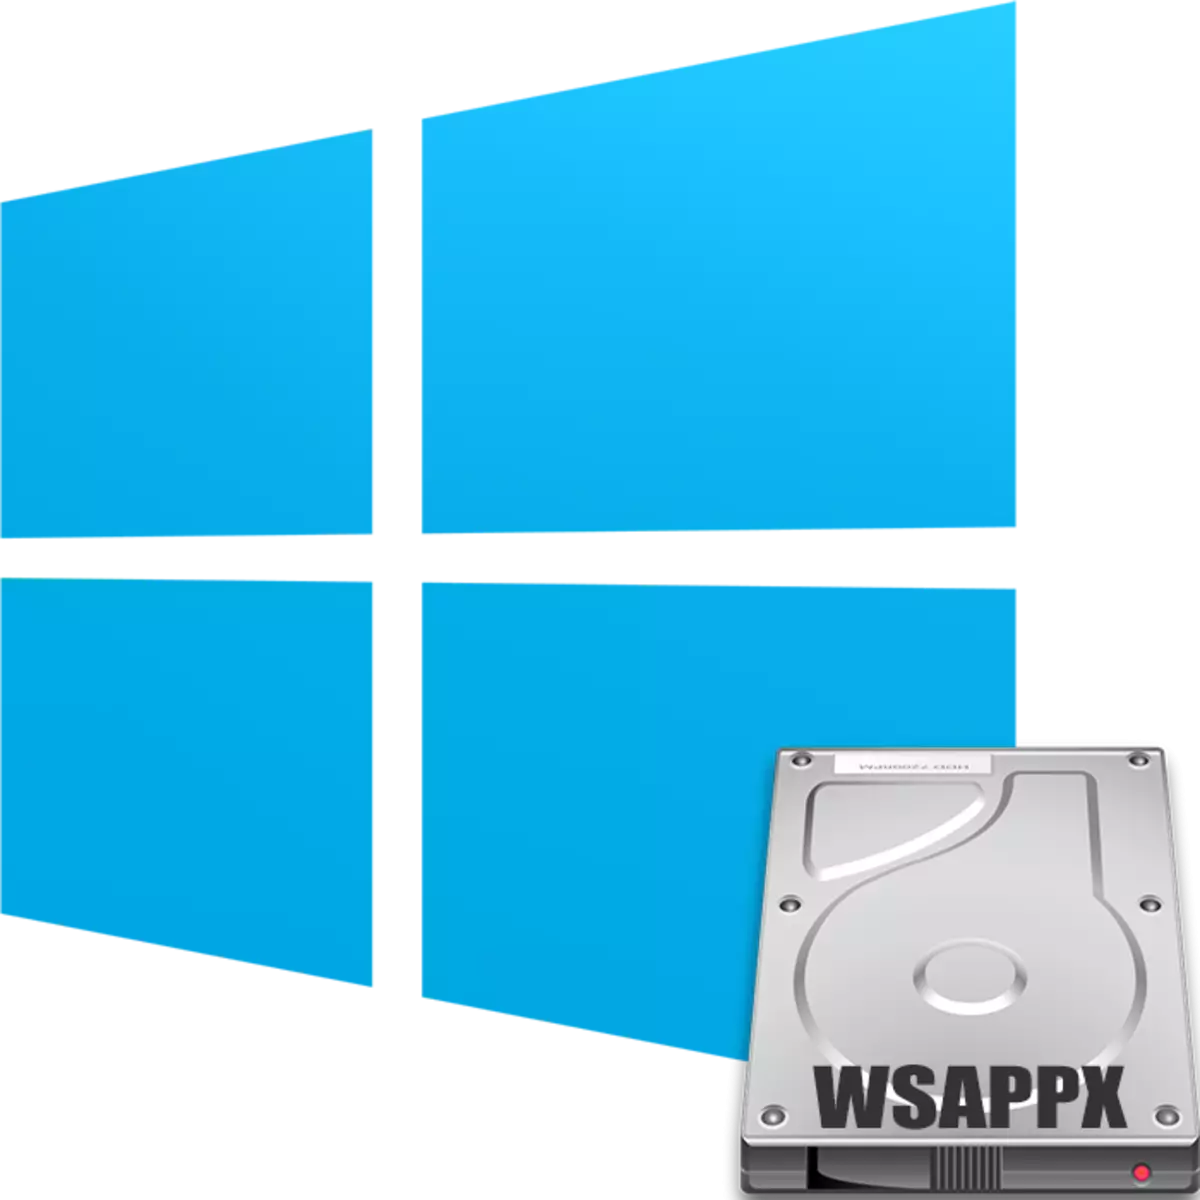 WSAppx પ્રક્રિયા વિન્ડોઝ 10 પર ડિસ્ક લોડ કરે છે